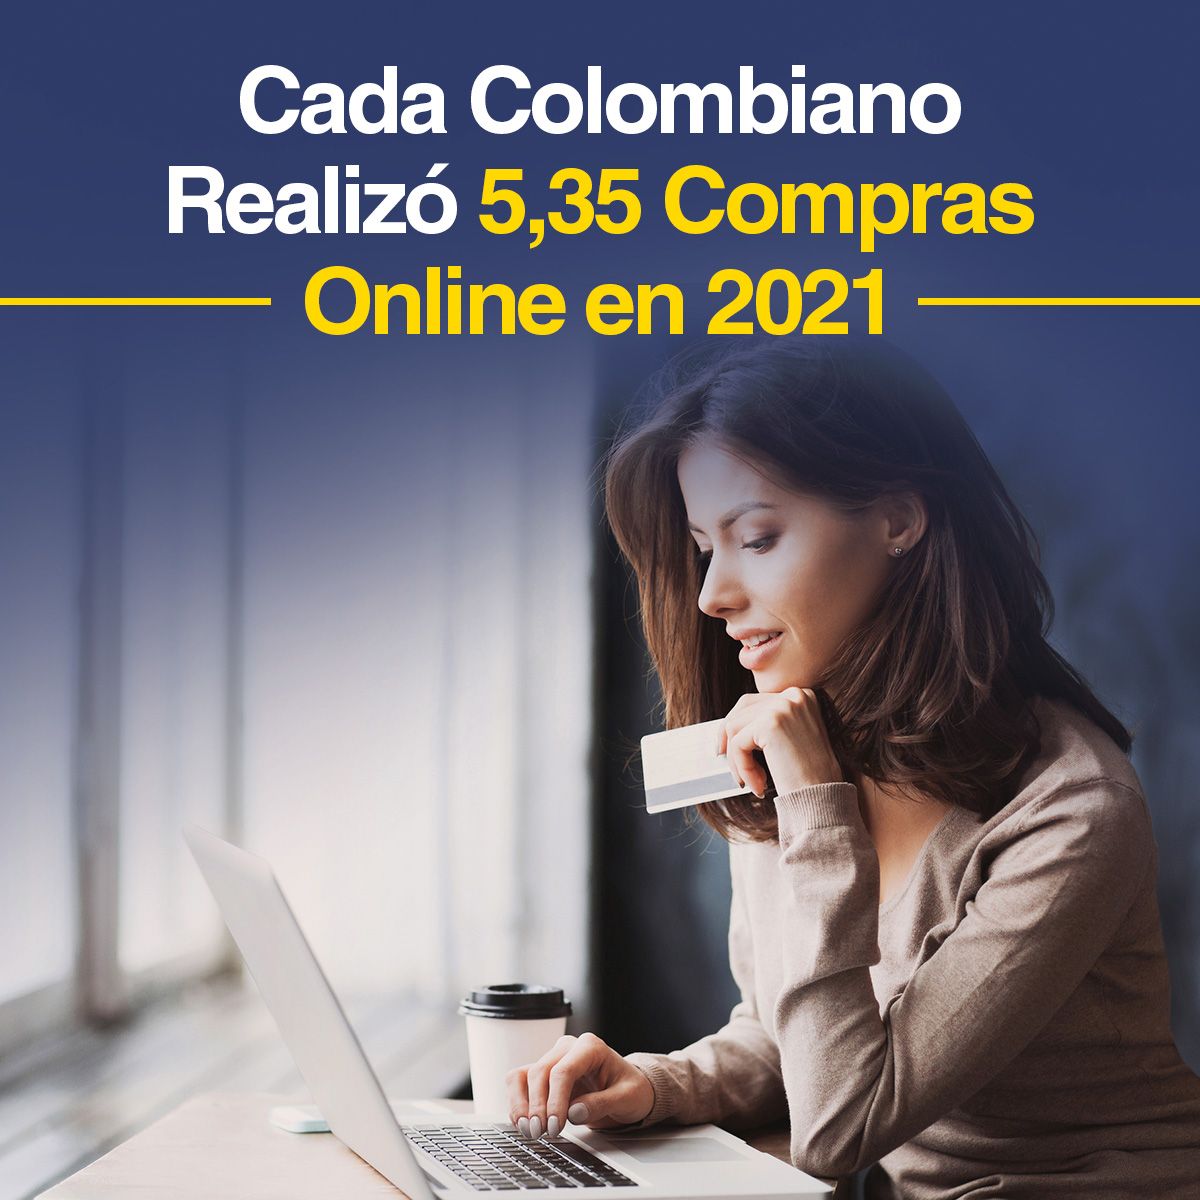 Cada Colombiano Realizó 5,35 Compras Online en 2021